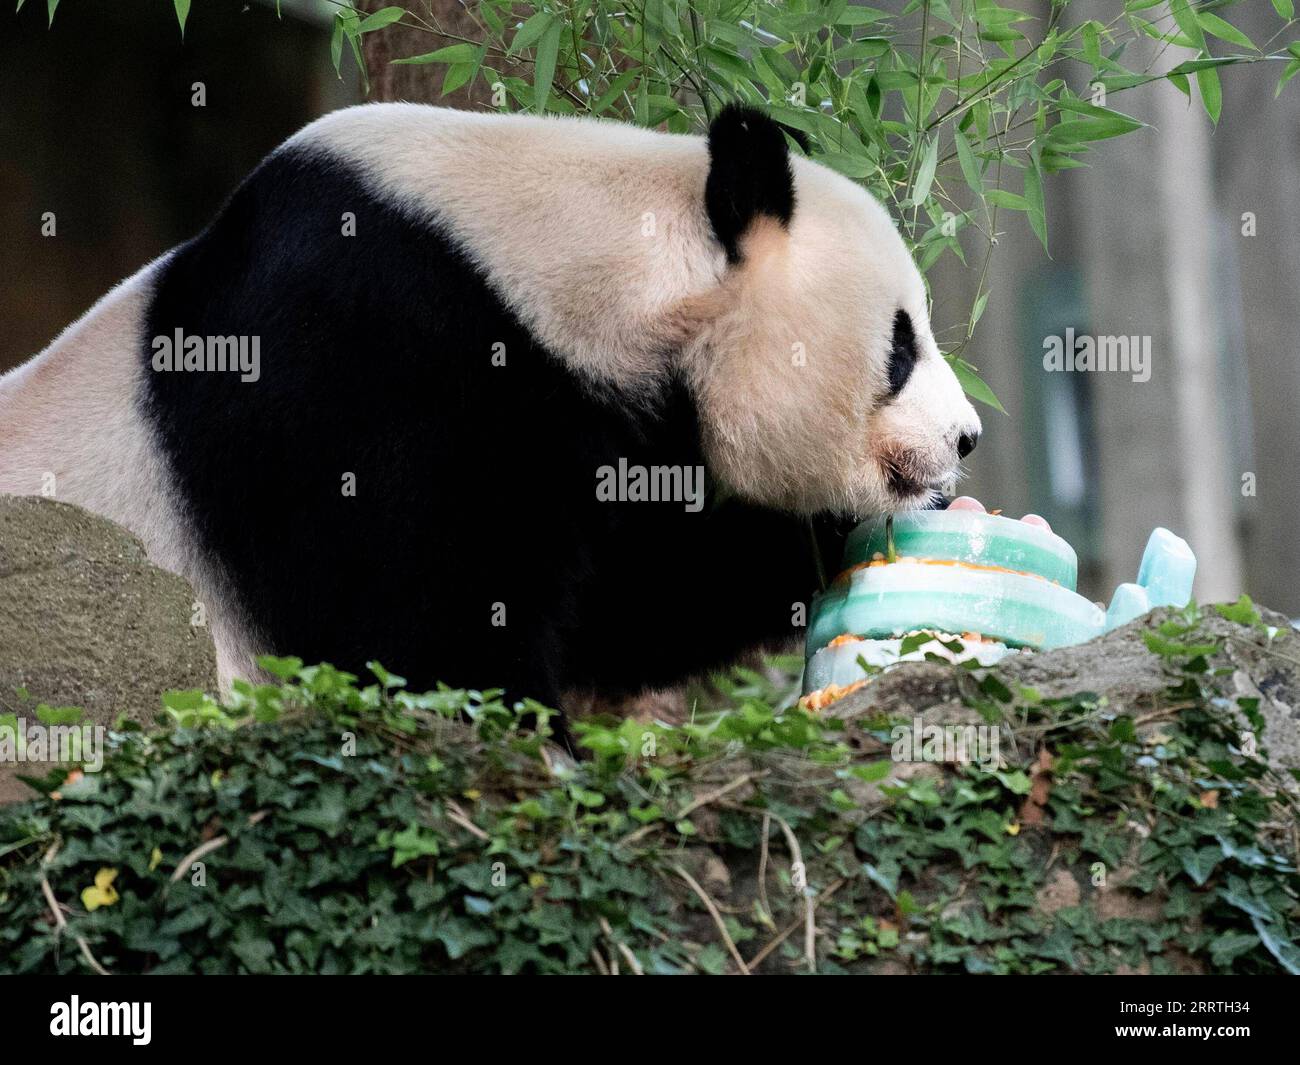 230723 -- WASHINGTON, D.C., 23. Juli 2023 -- Giant Panda Mei Xiang genießt am 22. Juli 2023 einen Eiskuchen im Smithsonian's National Zoo in Washington, D.C., USA. Die Riesenpanda Mei Xiang feierte hier am Samstag ihren 25. Geburtstag. Der Zoo organisierte eine besondere Party, um den Anlass mit ihren Fans zu feiern. US-WASHINGTON, D.C.-RIESE PANDA MEI XIANG-GEBURTSTAG LIUXJIE PUBLICATIONXNOTXINXCHN Stockfoto